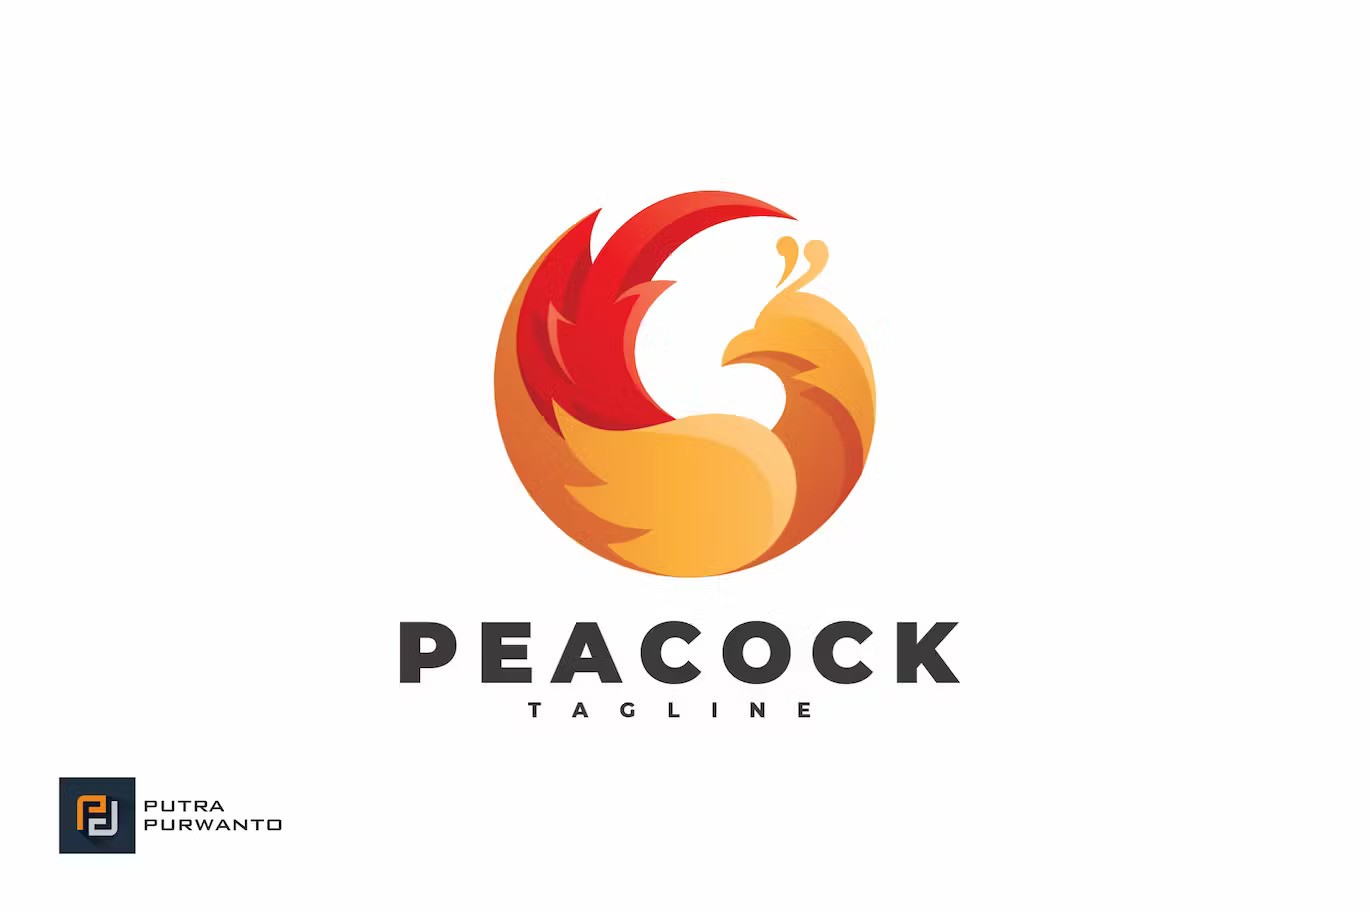 A peacock bird logo template